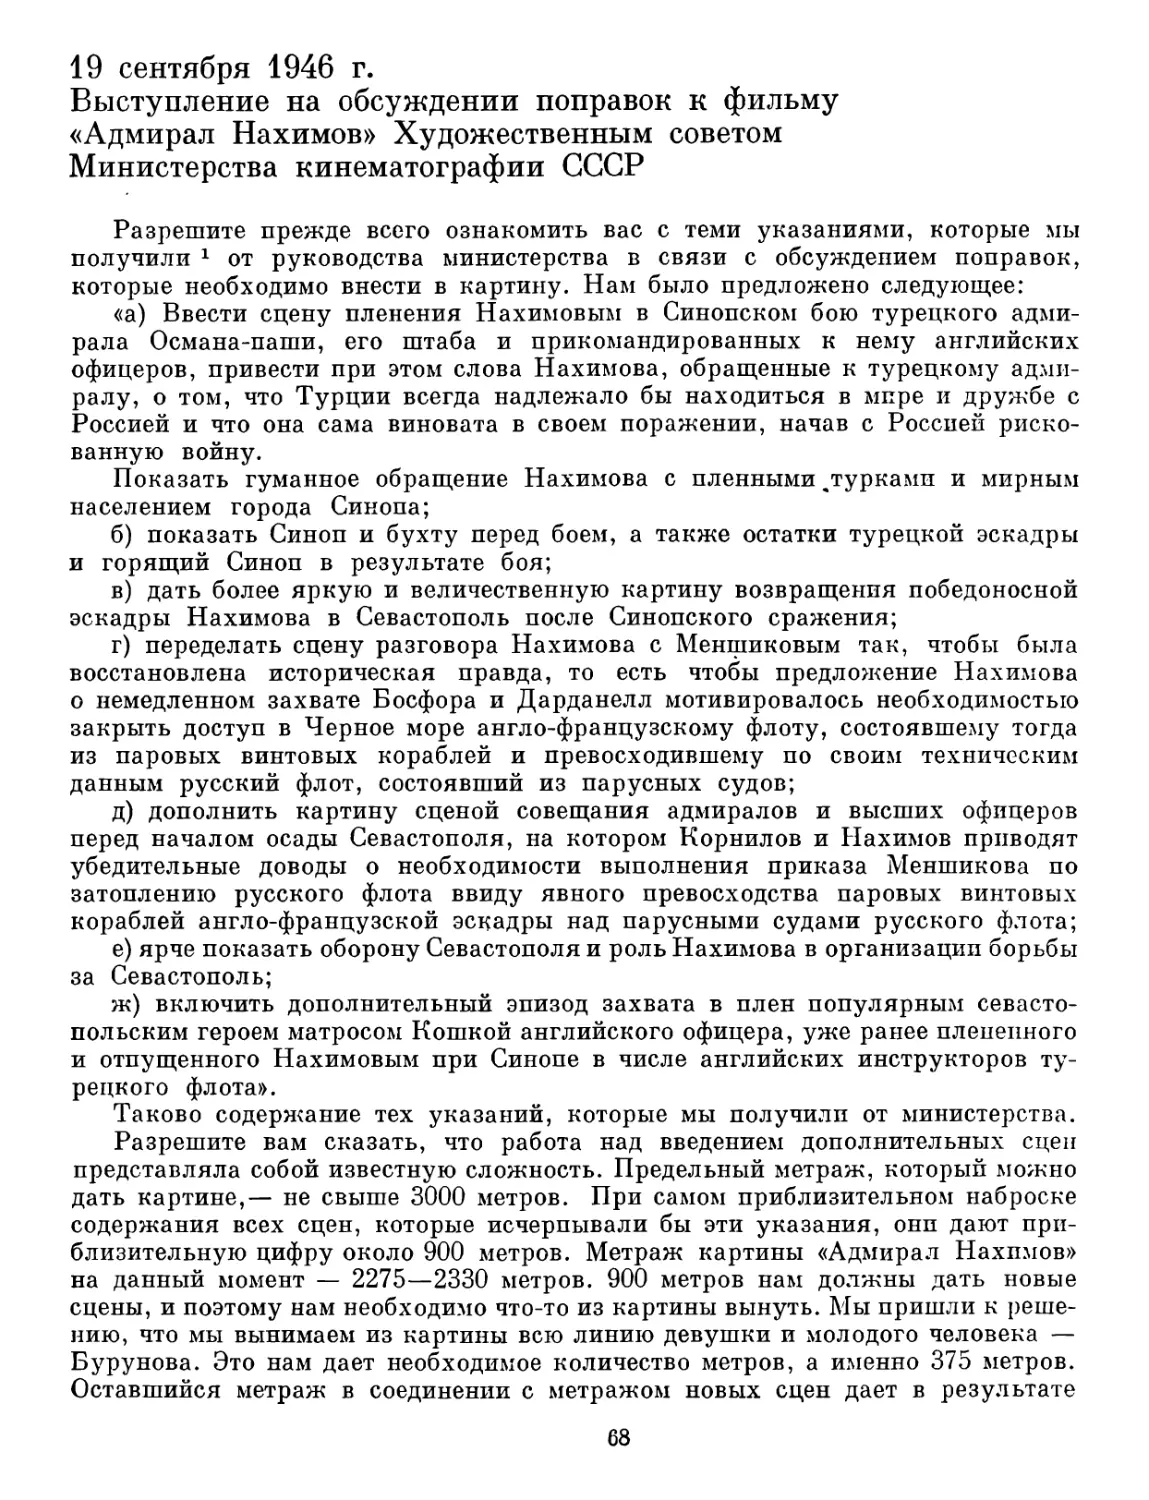 19 сентября 1946 г. Выступление на обсуждении поправок к фильму «Адмирал Нахимов» Художественным советом Министерства кинематографии СССР